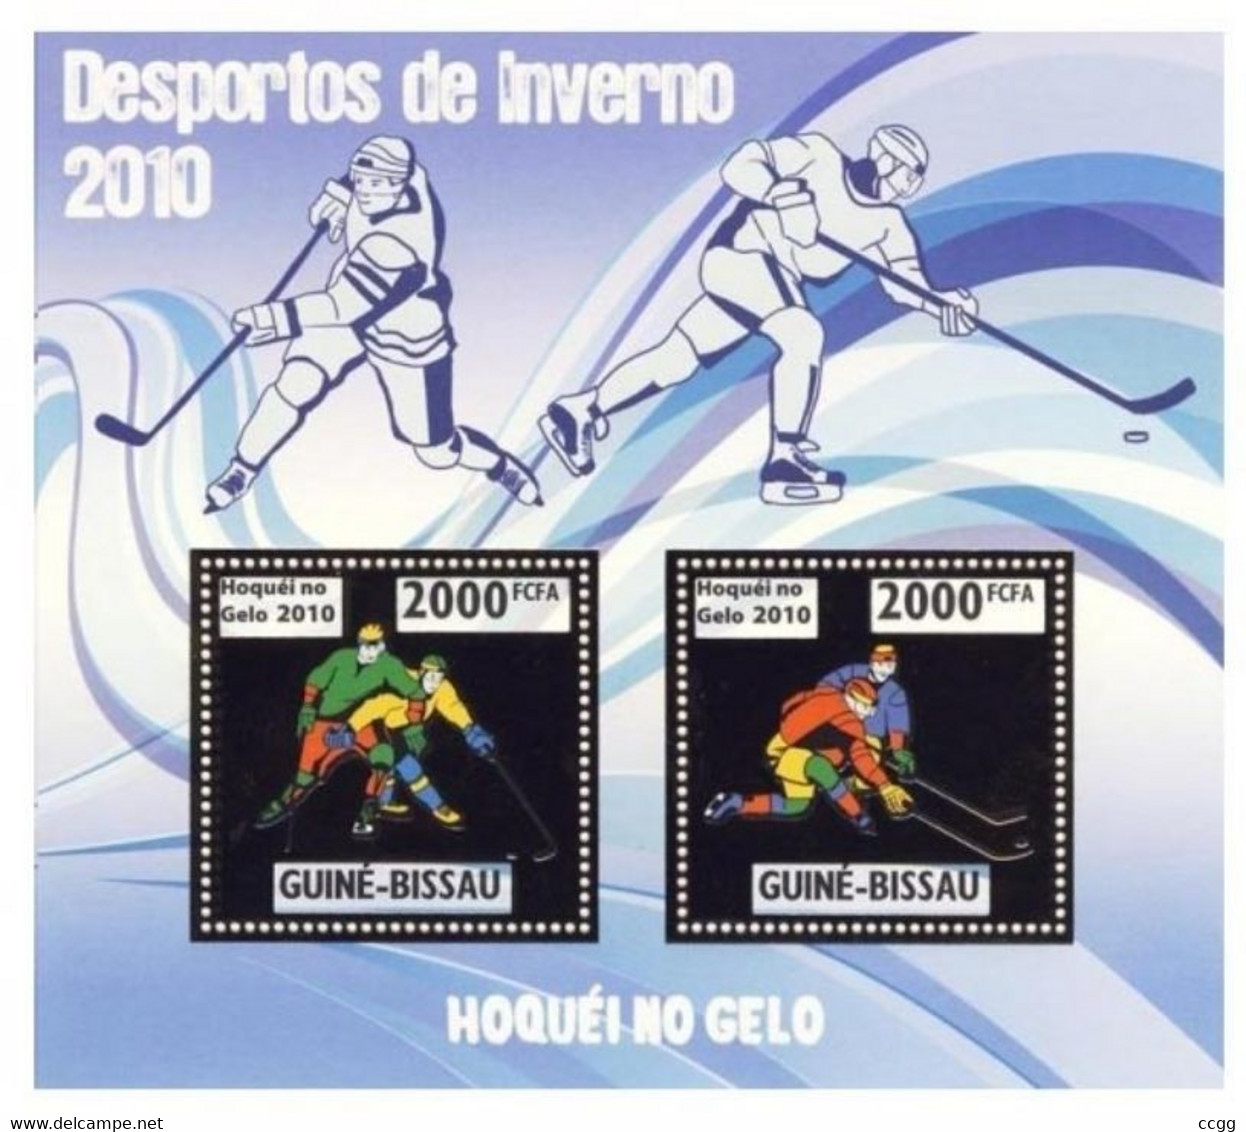 Olympische Spelen  2010 , Guinea Bissau  - Blok ( Zegels Goud )  Postfris - Hiver 2010: Vancouver